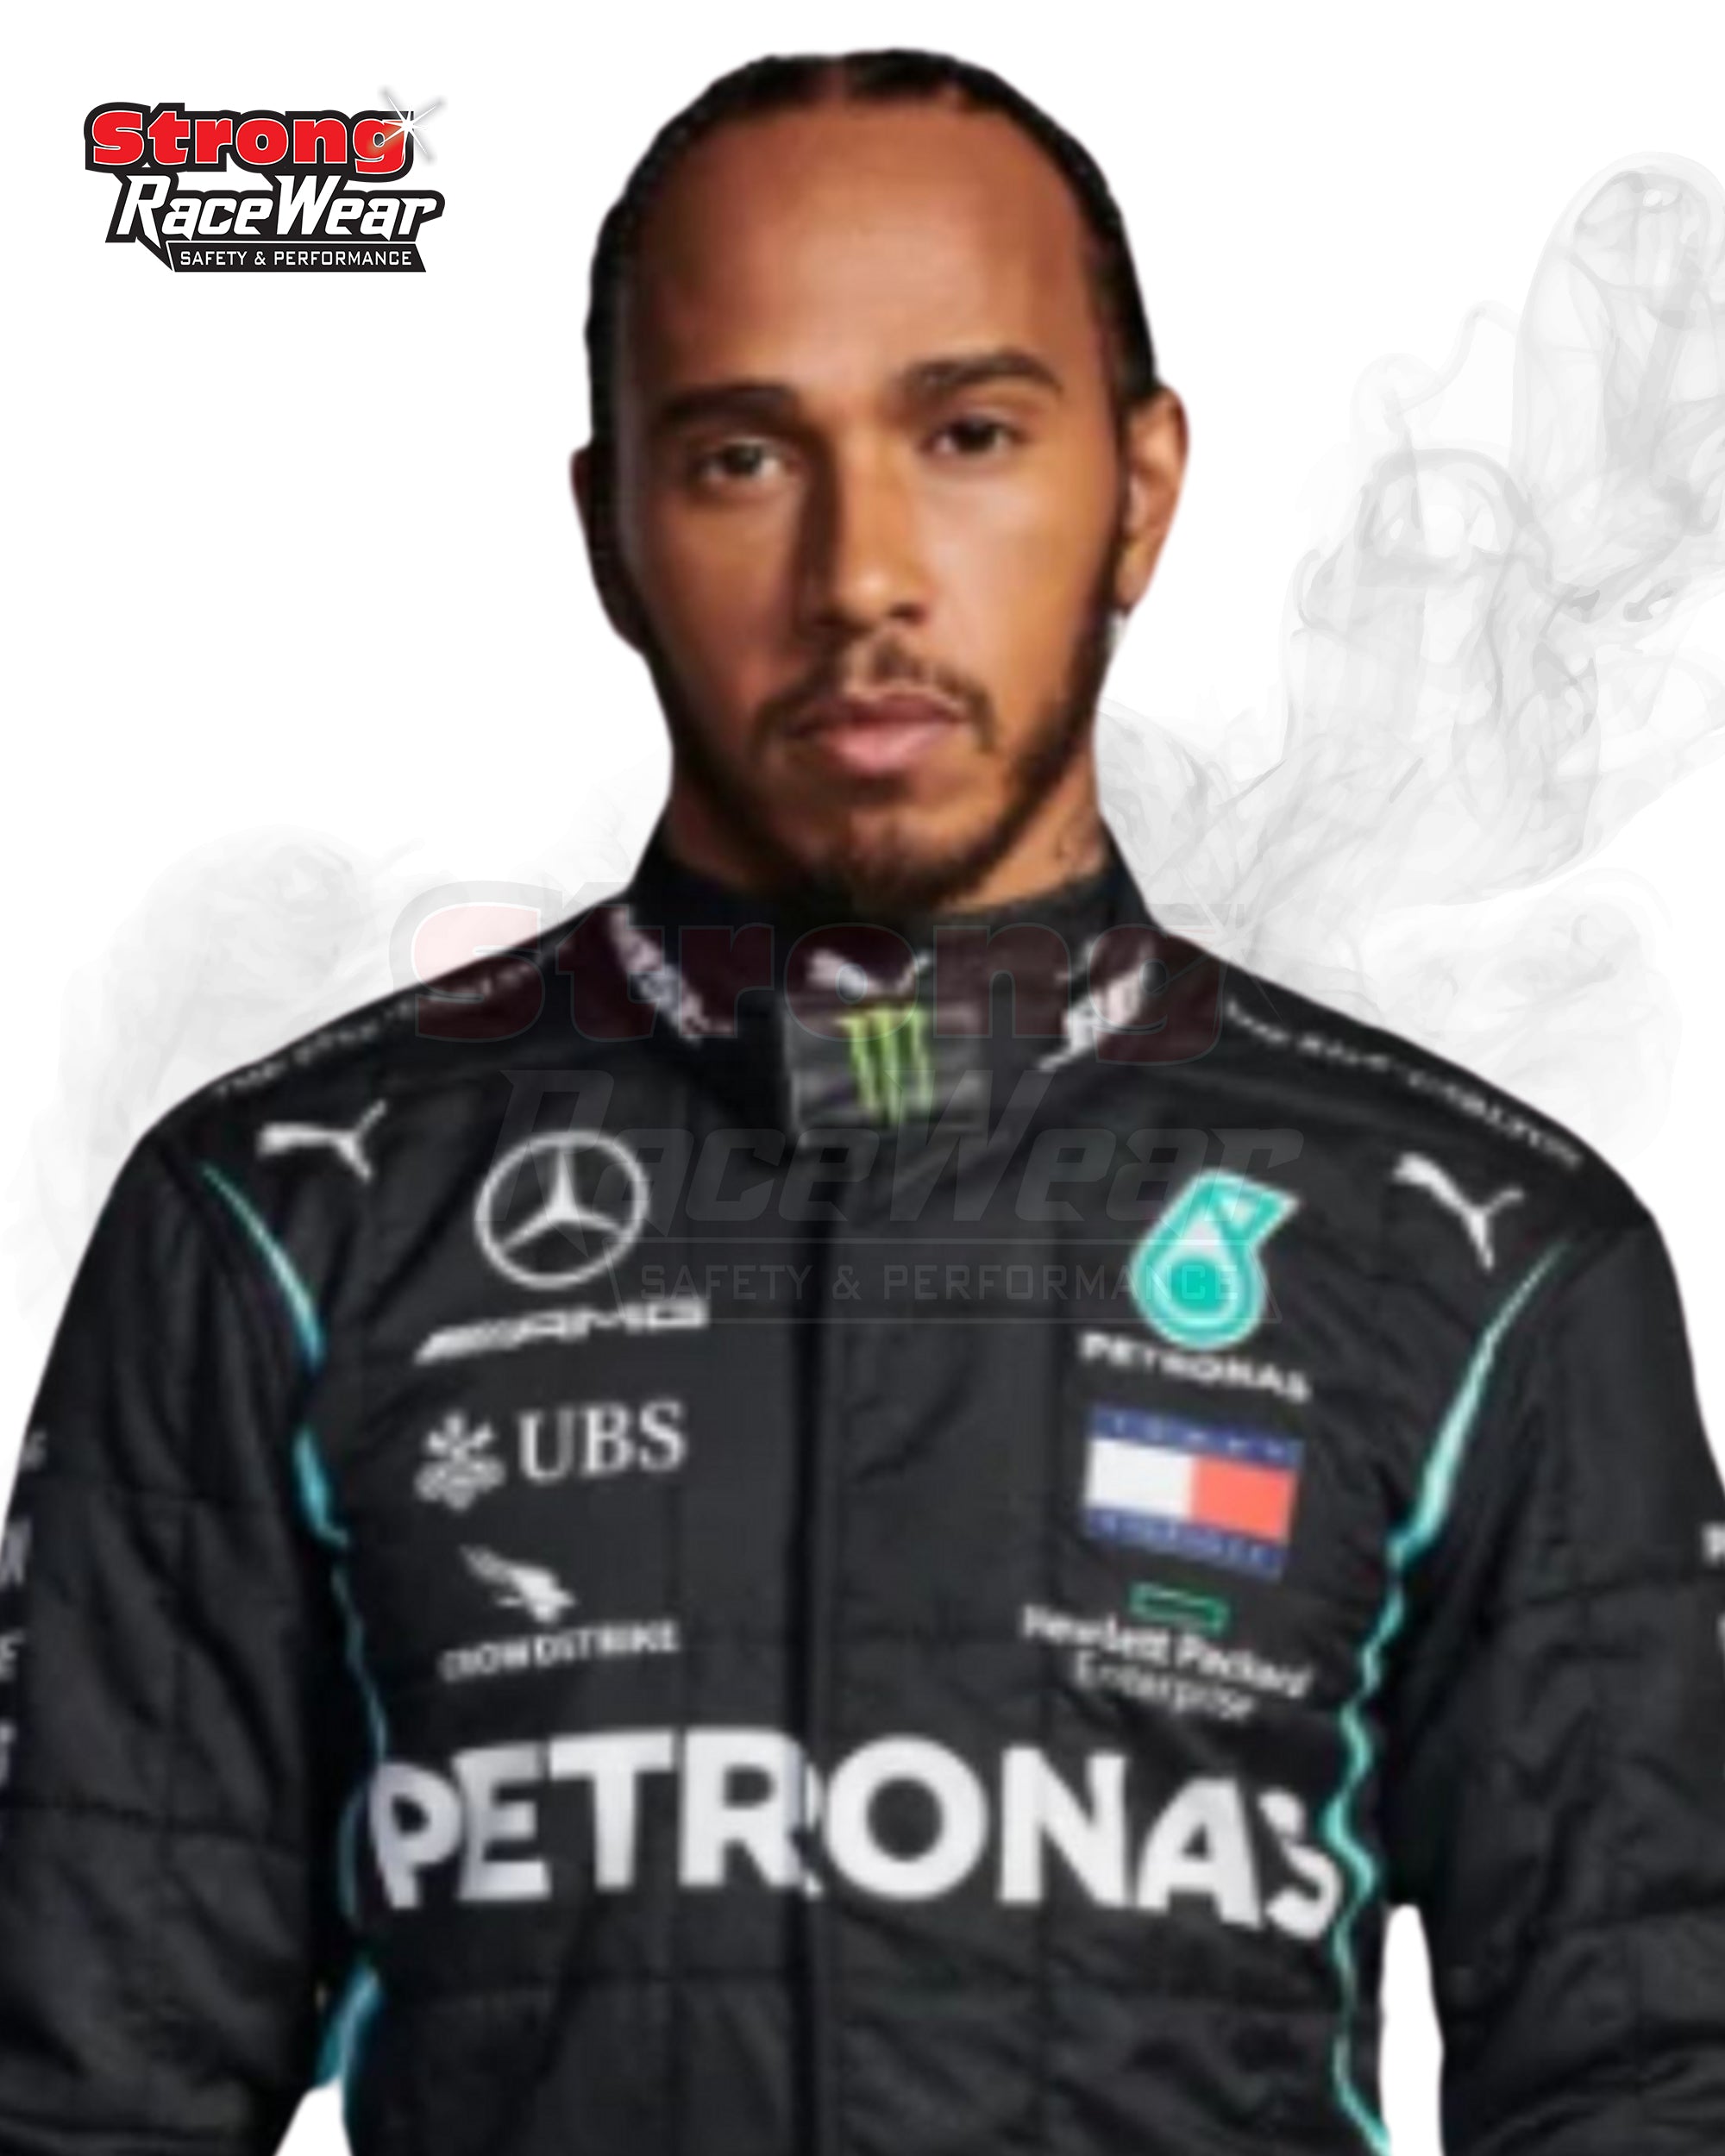 2022 Lewis Hamilton Mercedes AMG F1 Race Suit